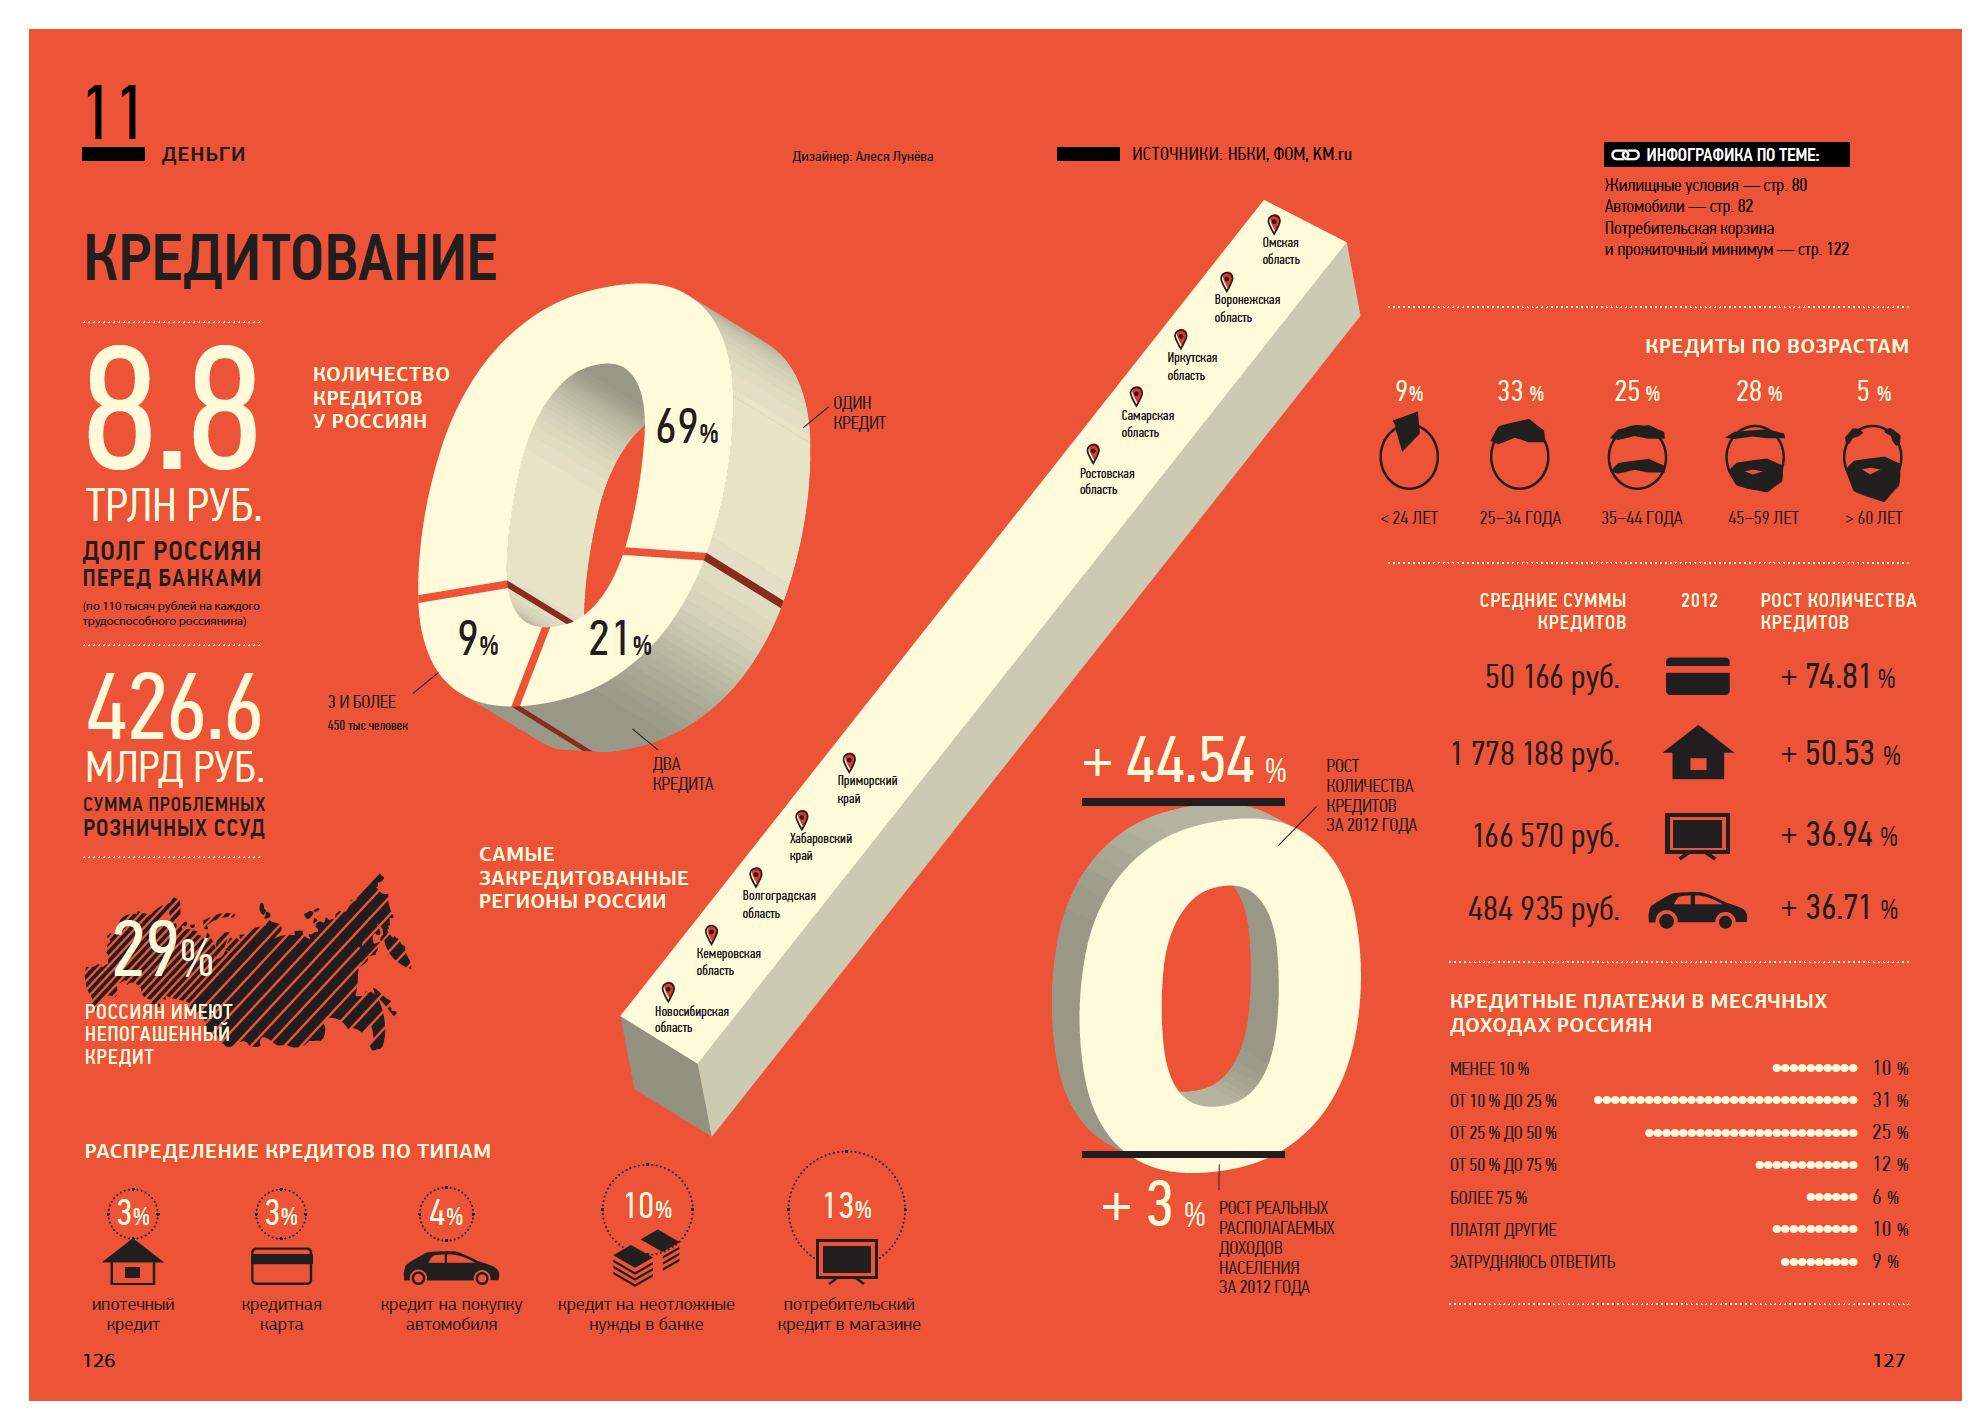 Инфографика цифры. Статистика в цифрах. Россия в цифрах. Инфографика цифры и факты.